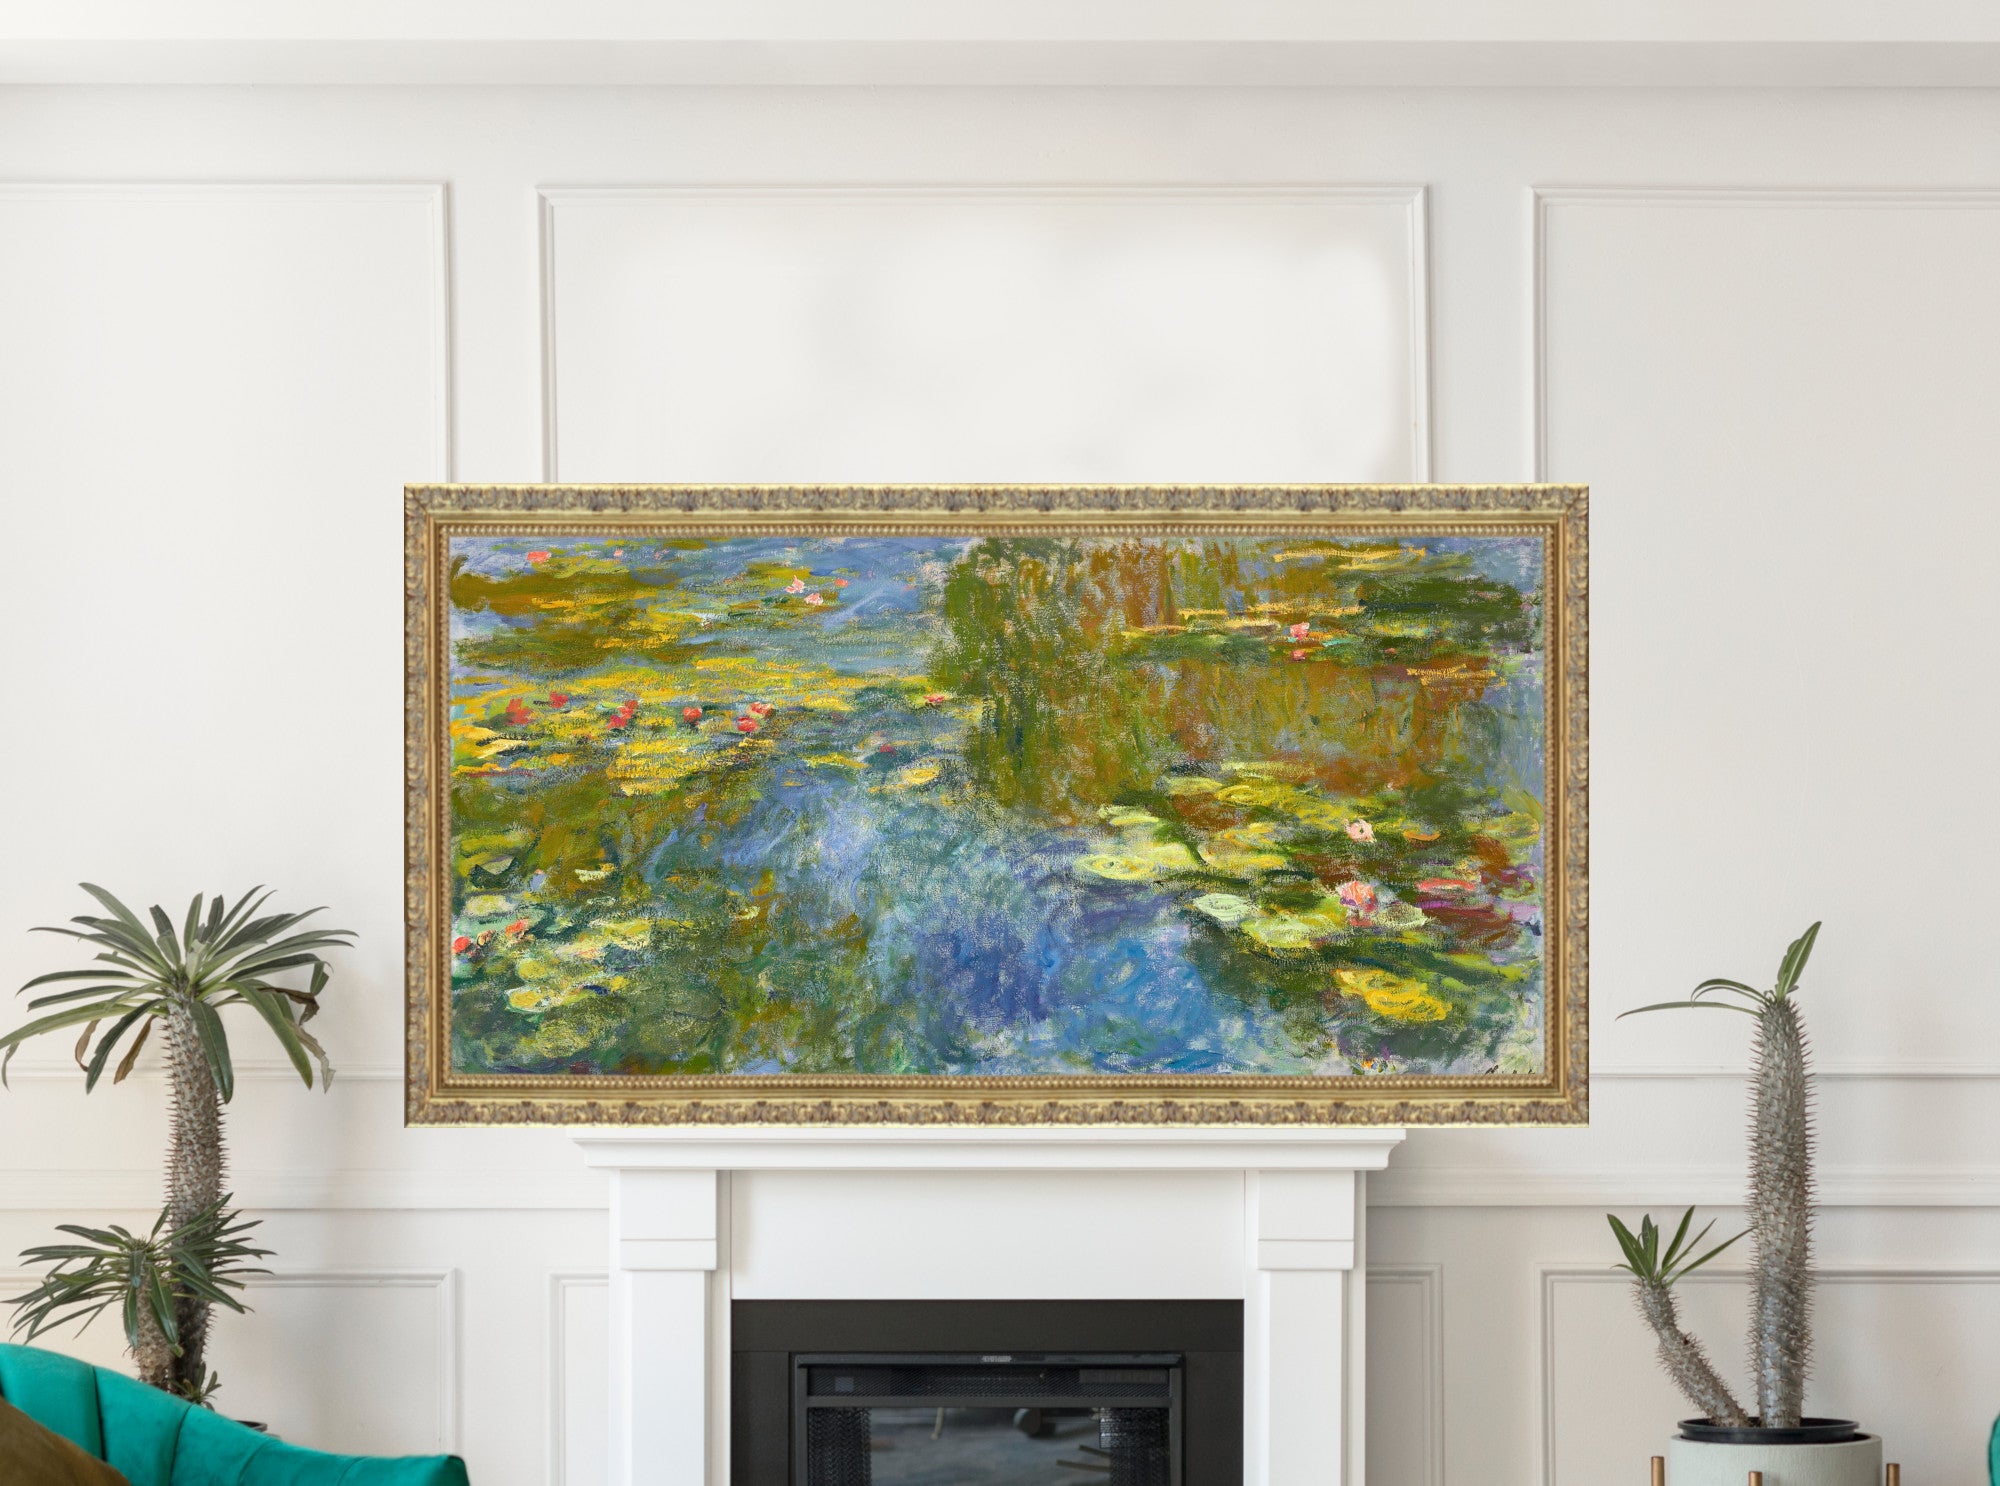 Claude Monet - Le bassin aux Nymphéas (Water Lily Pond)